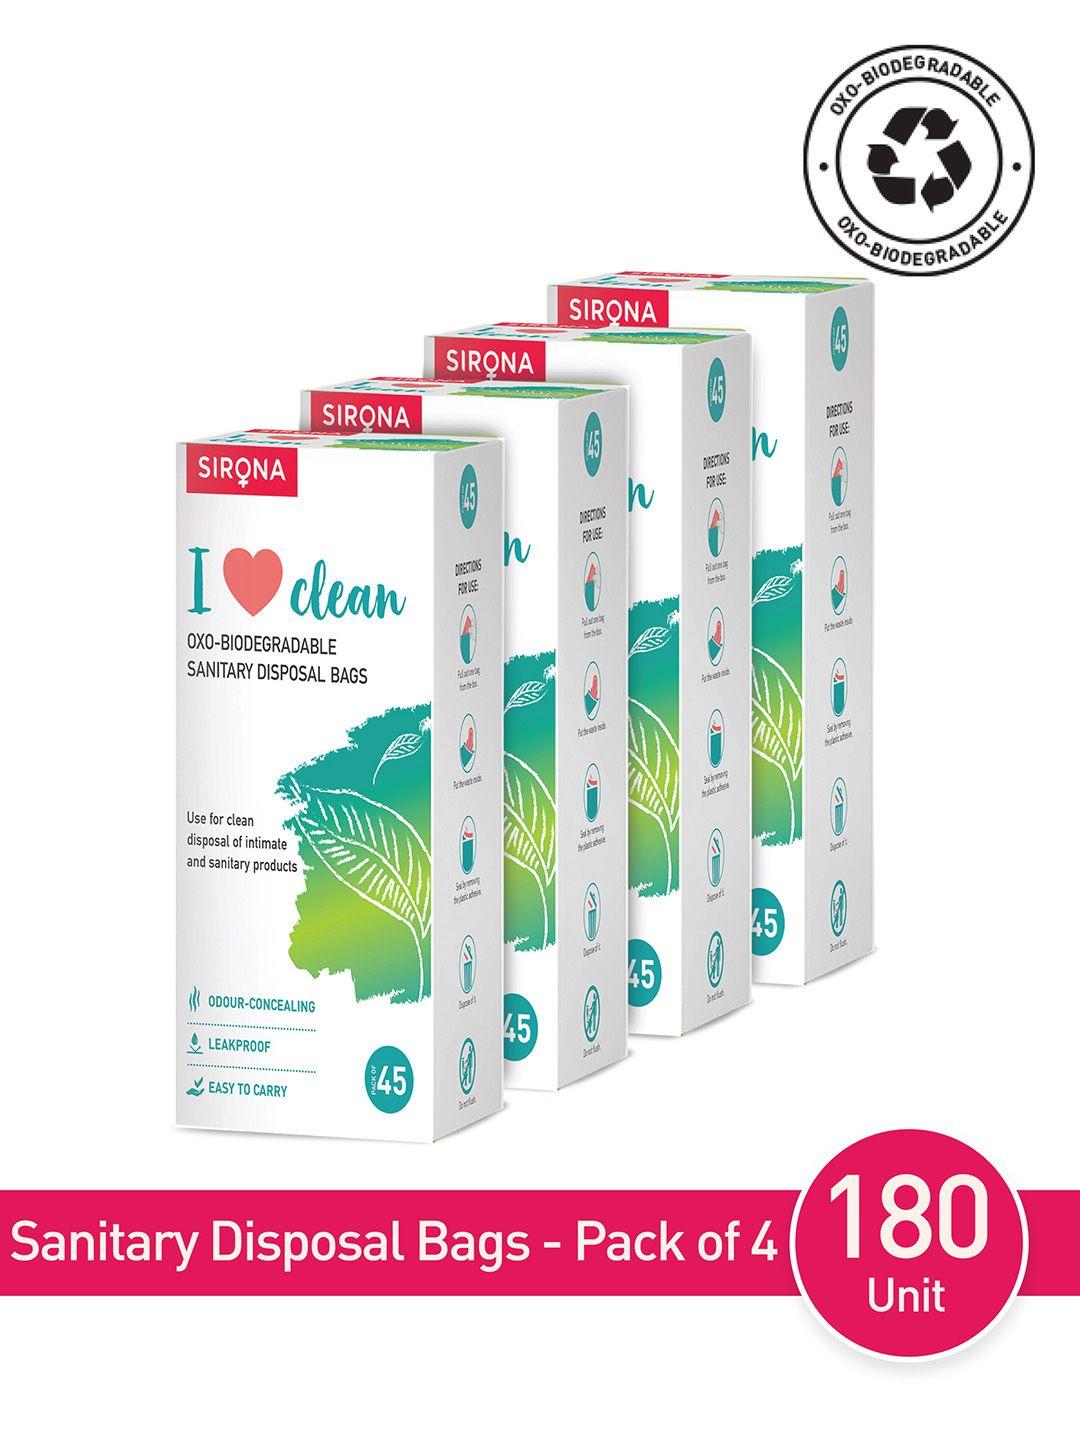 sirona pack of 4 sanitary disposal bags - 180 bags